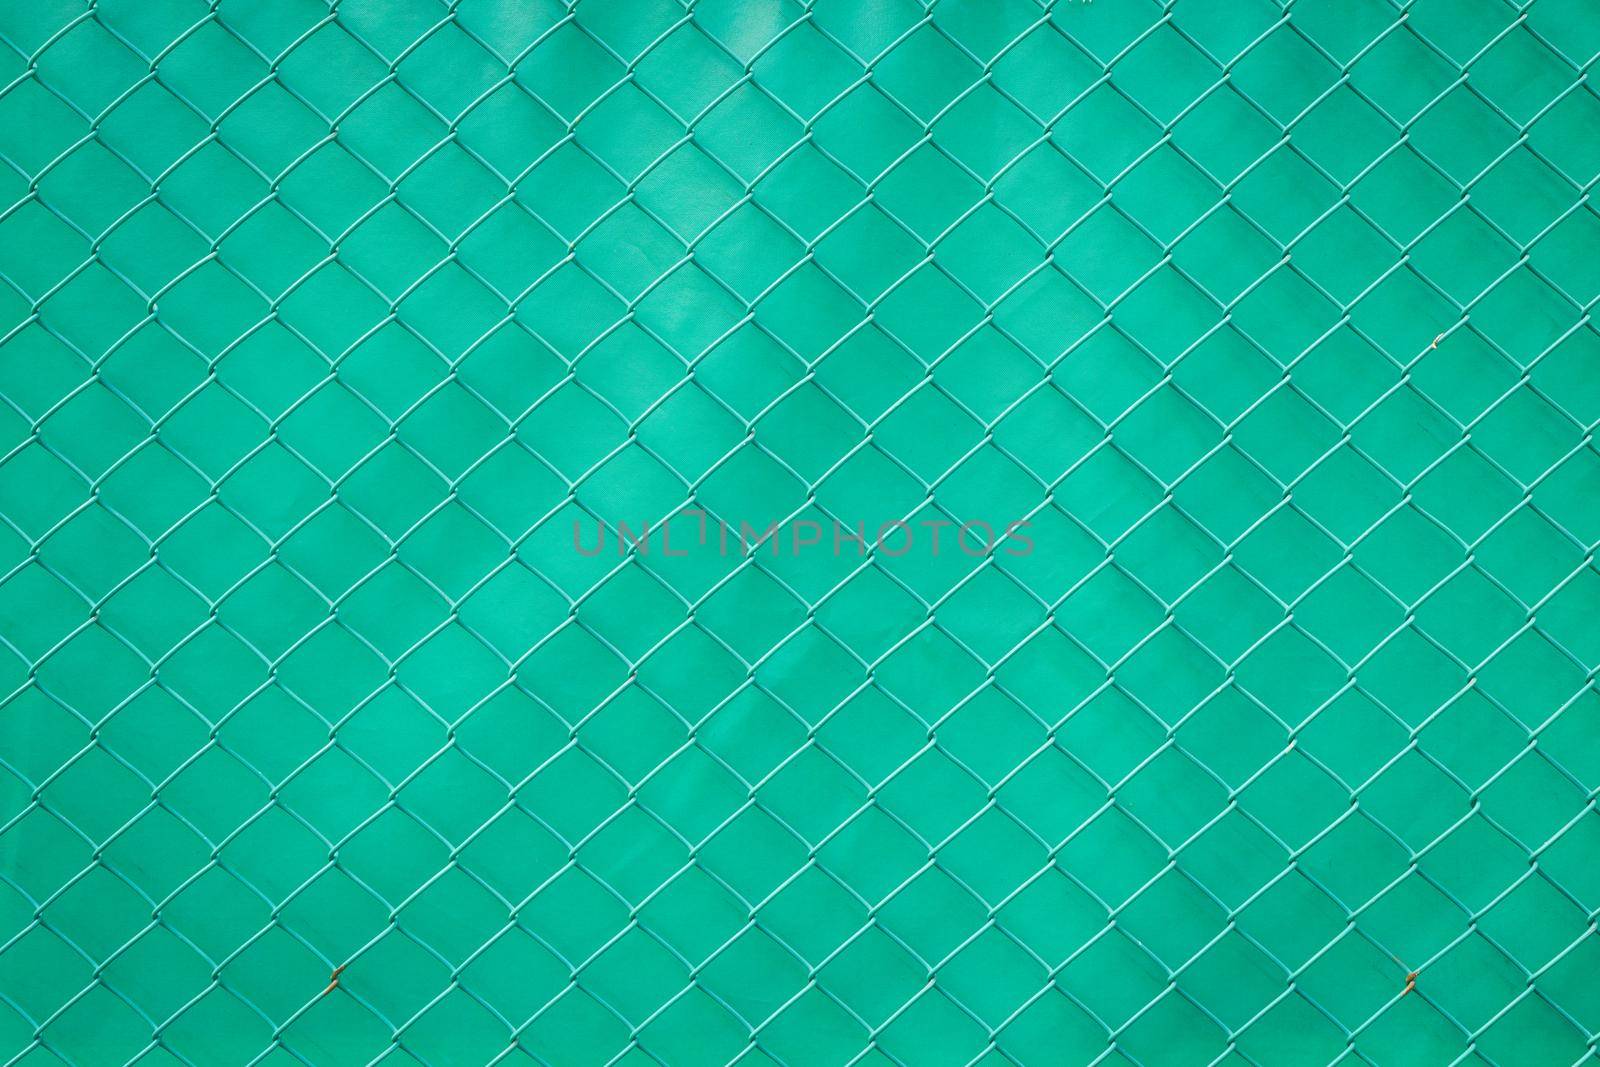 Steel mesh rusty on green background. by jayzynism